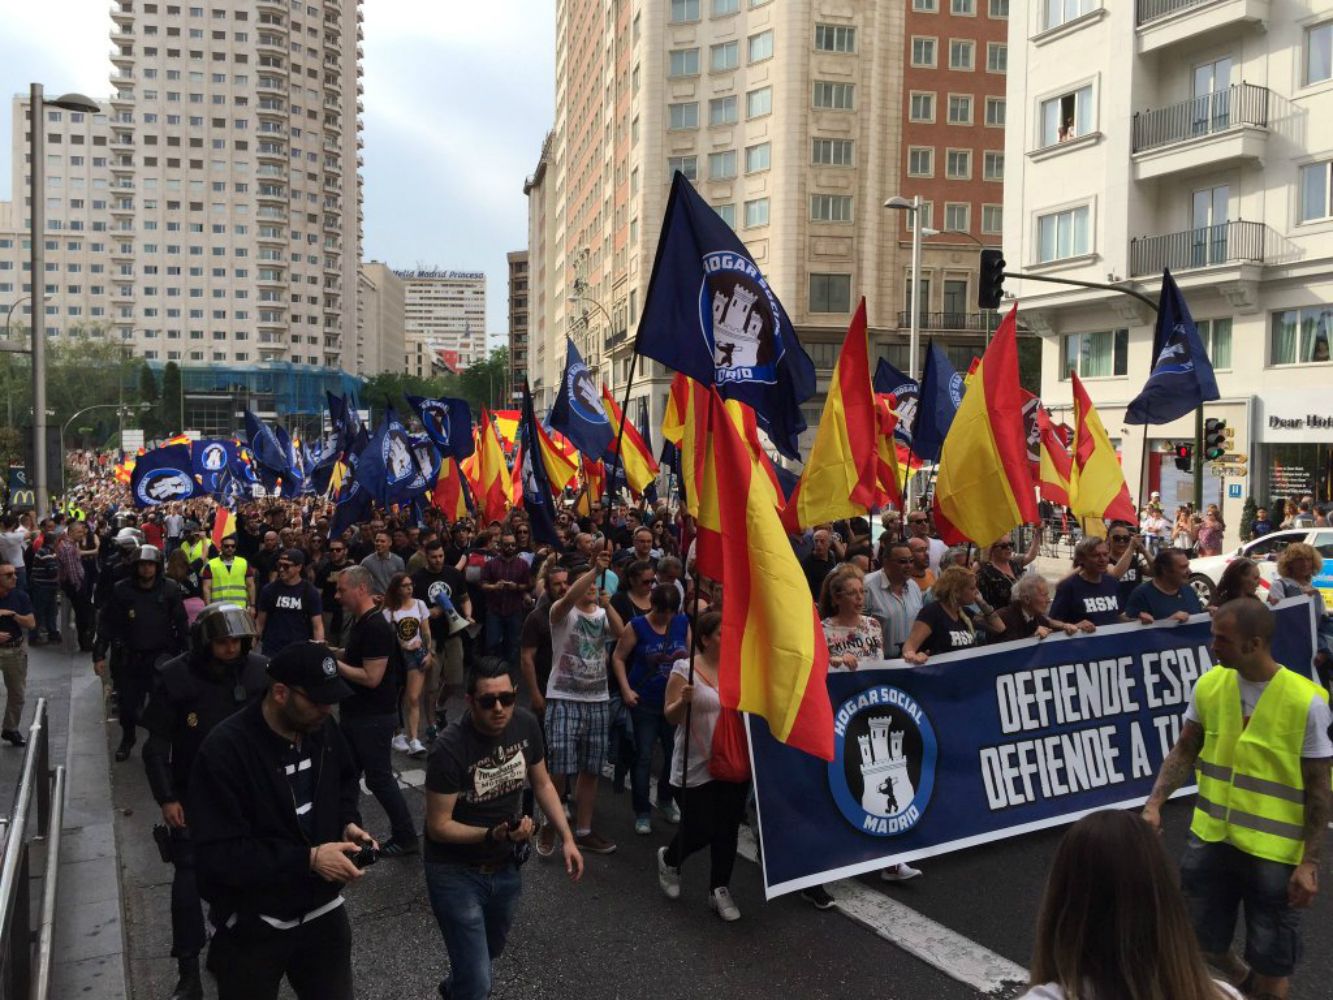 Denuncian la manifestación neonazi de Hogar Social Madrid por incitar al odio